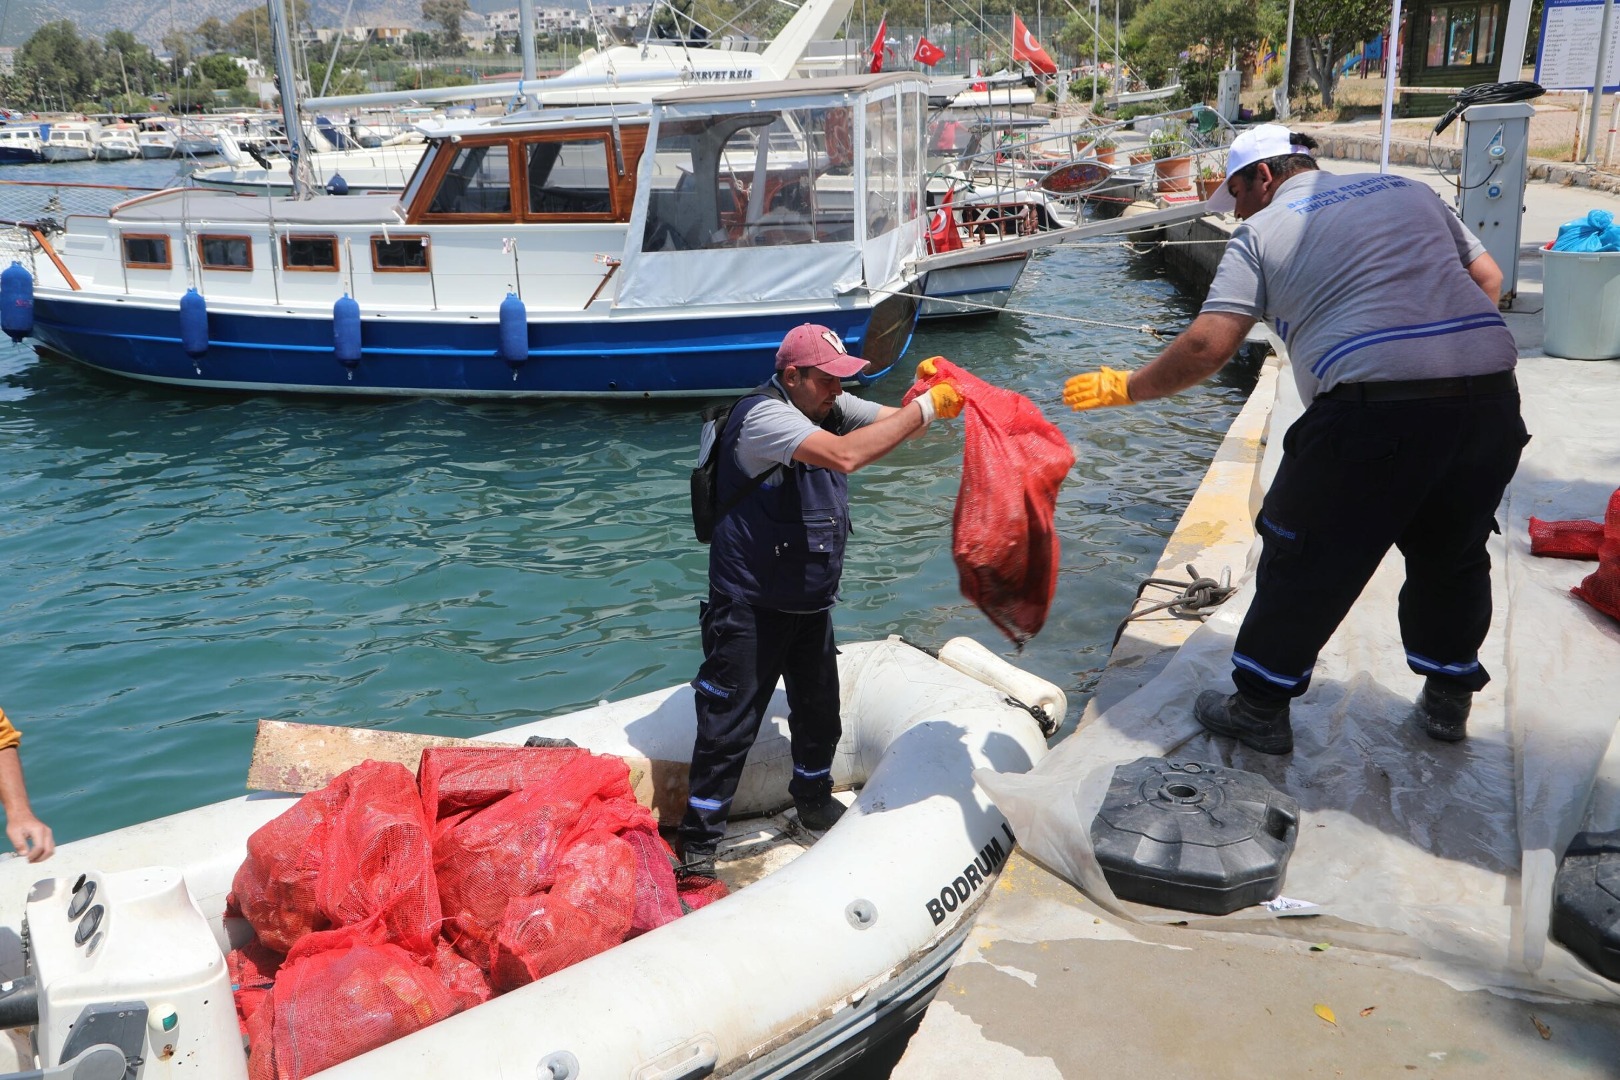 Sahilden geçenler gözlerini alamadı: Denizin dibine daldılar 342 kilo çıkardılar 7